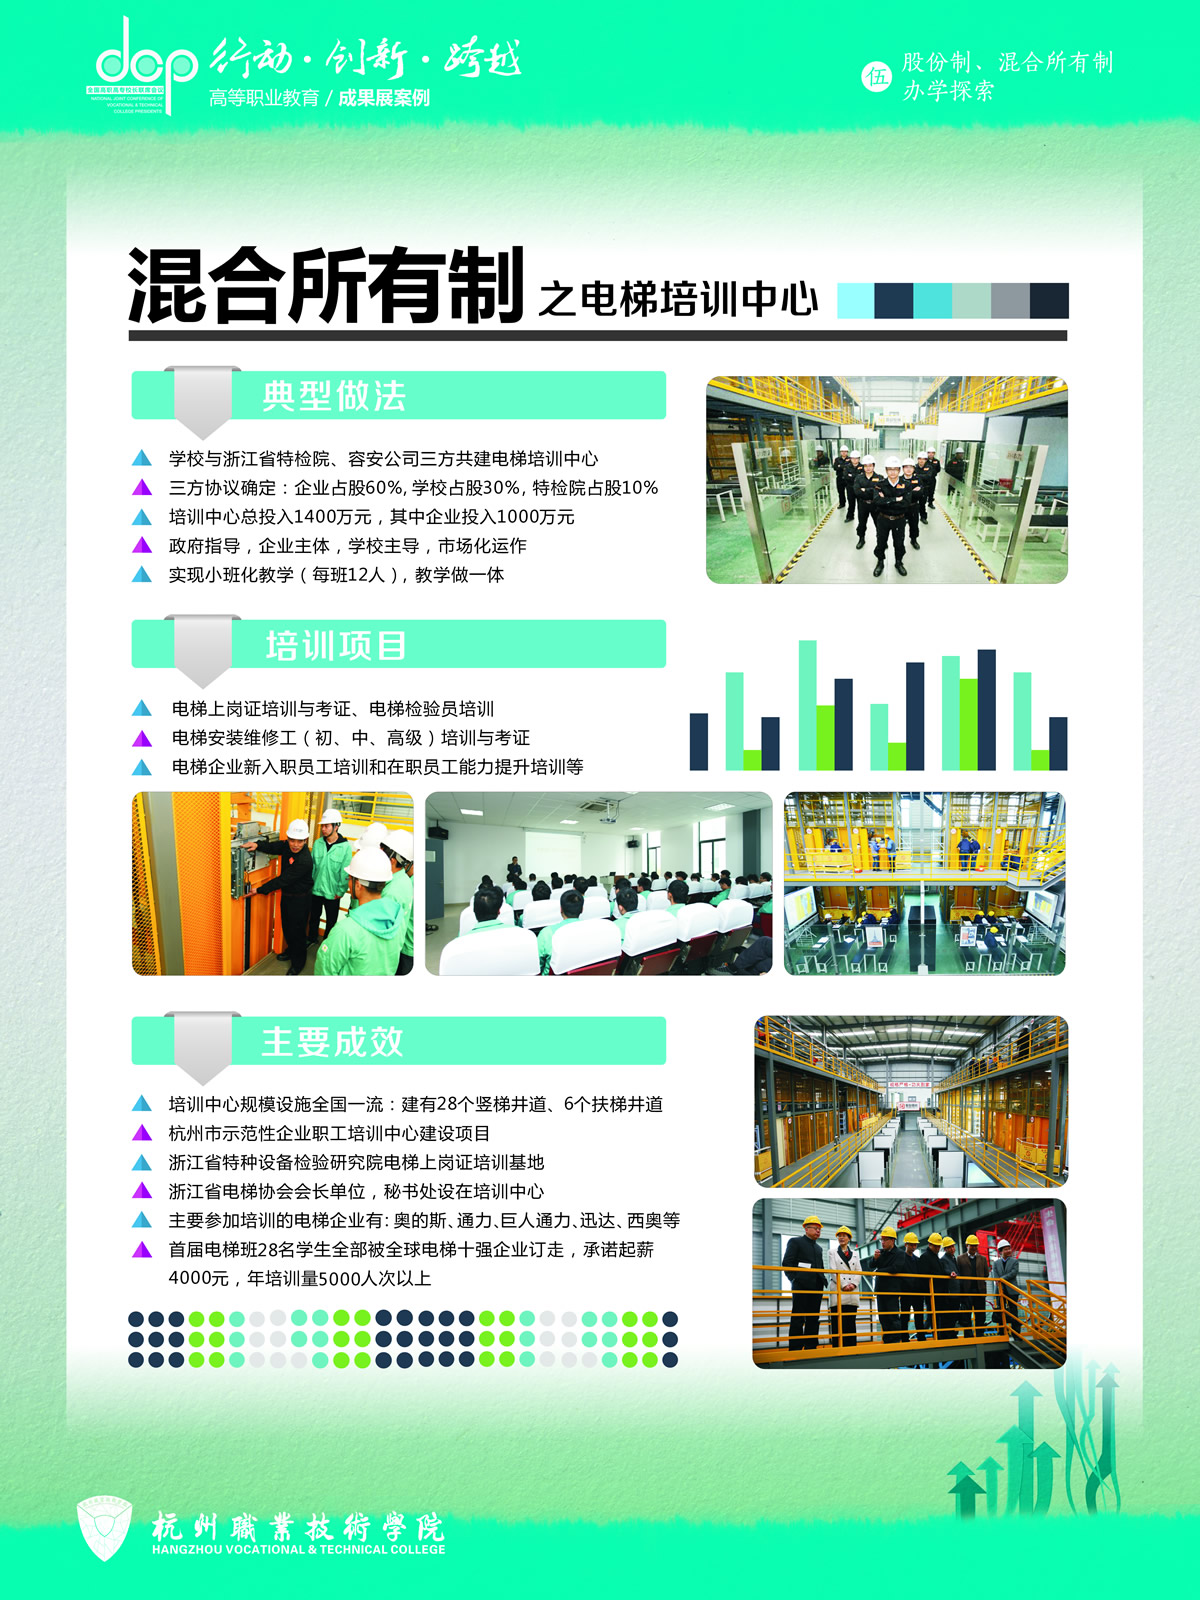 杭州职业技术学院+宣传展板+混合所有制.jpg